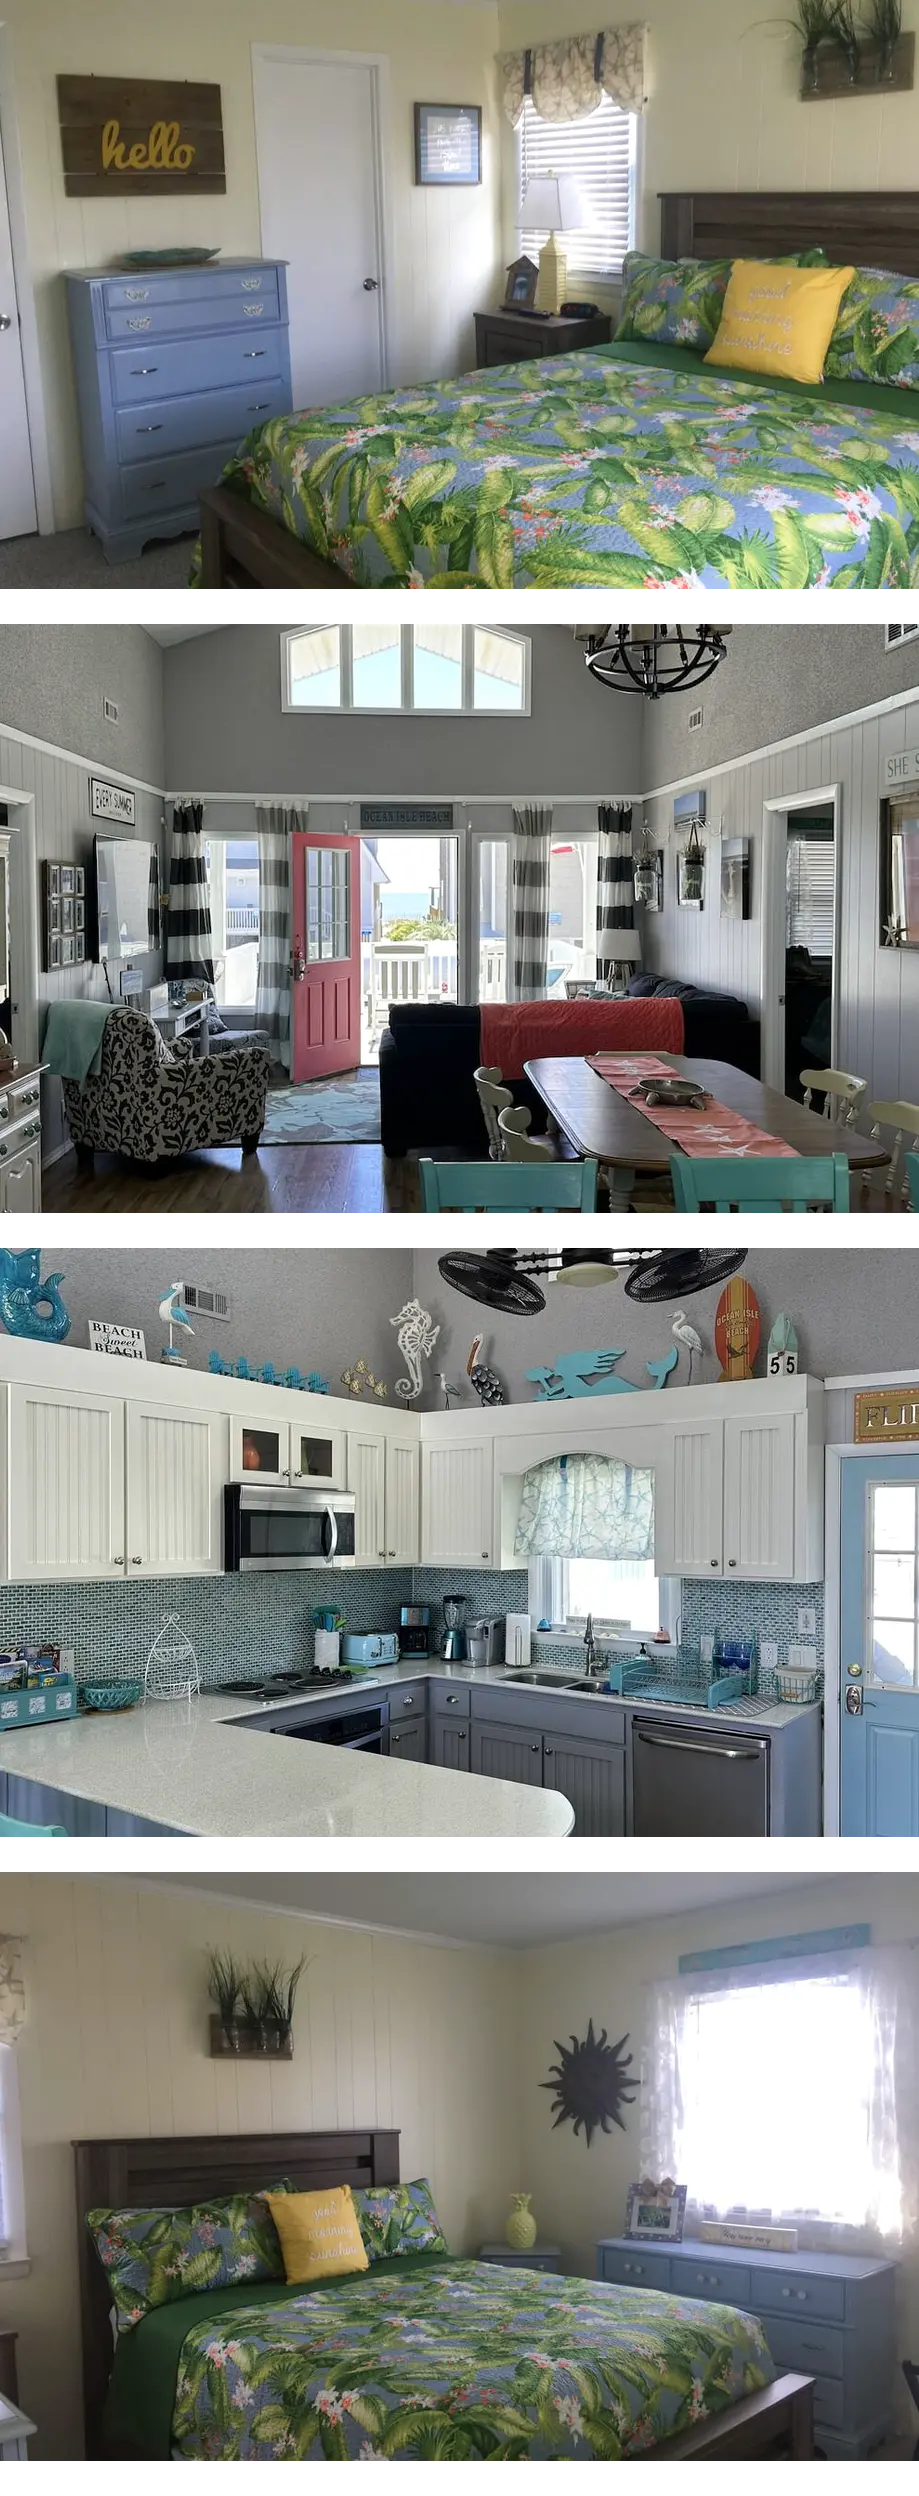 OCEAN VIEW - Vacation rental home in Ocean Isle Beach, NC